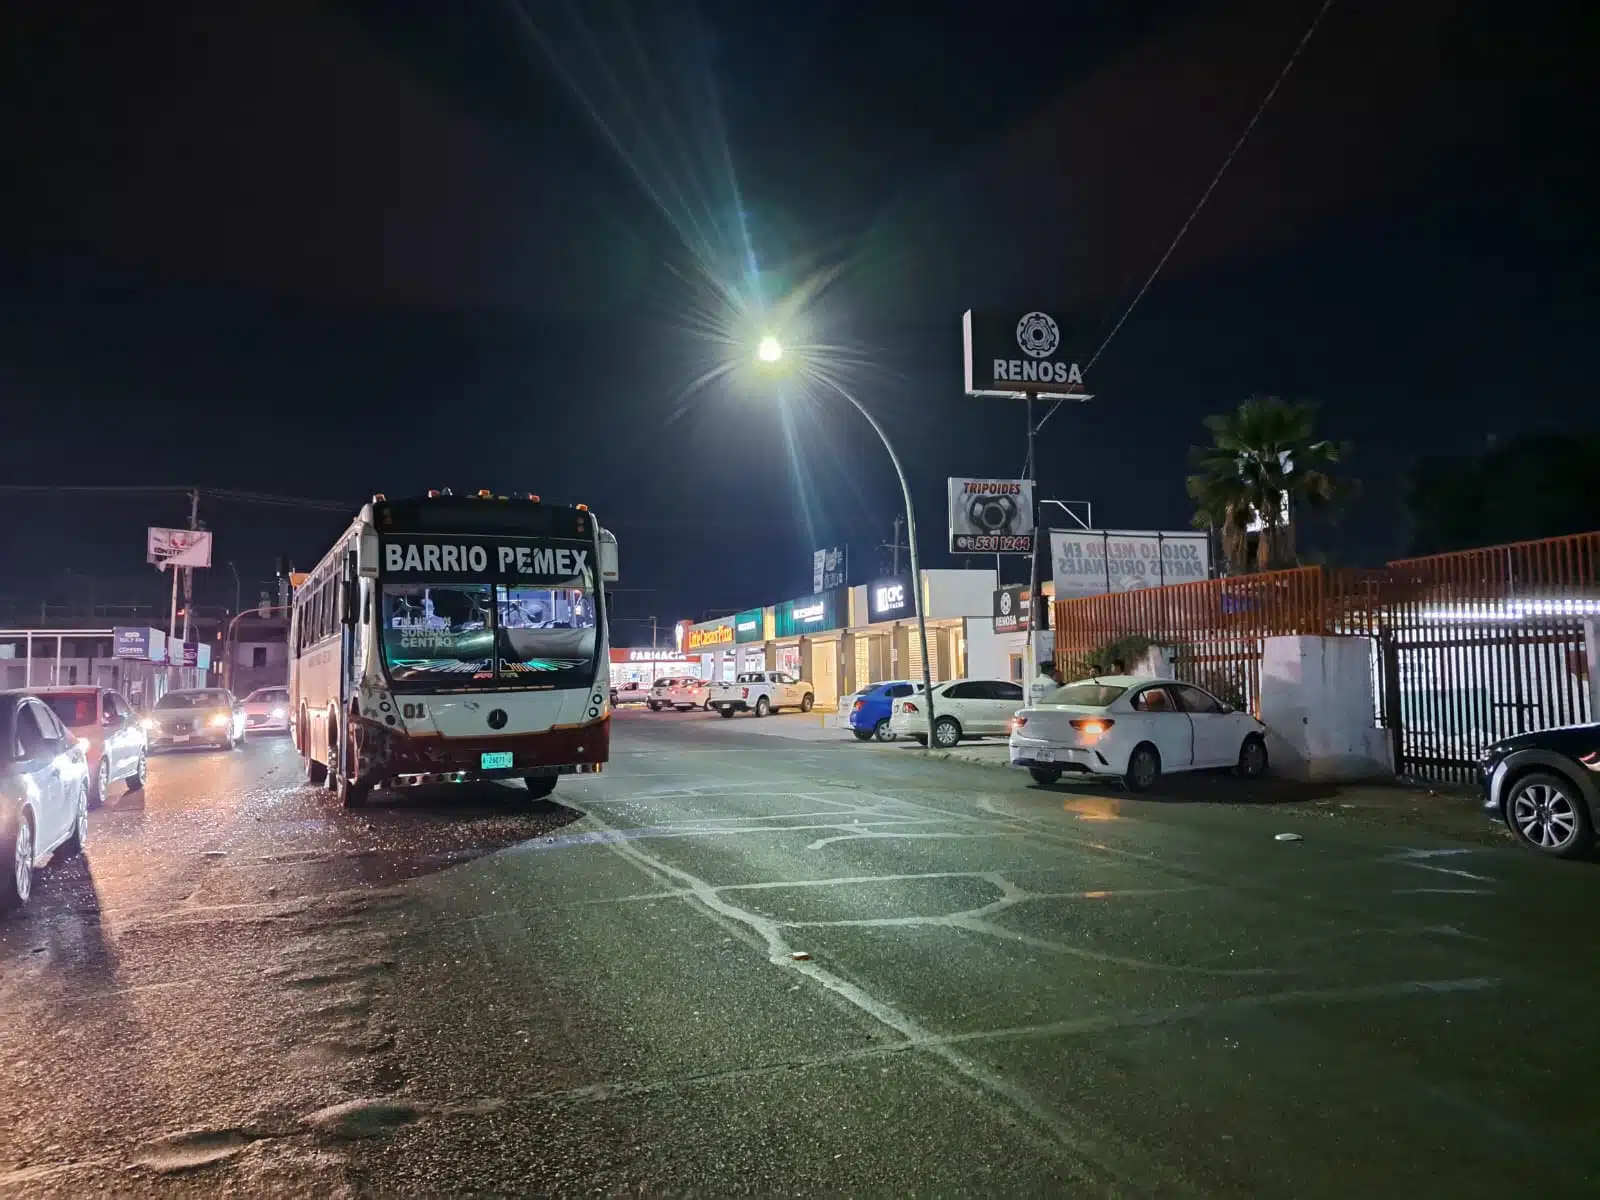 Camión de transporte público de la ruta Barrio-Pemex